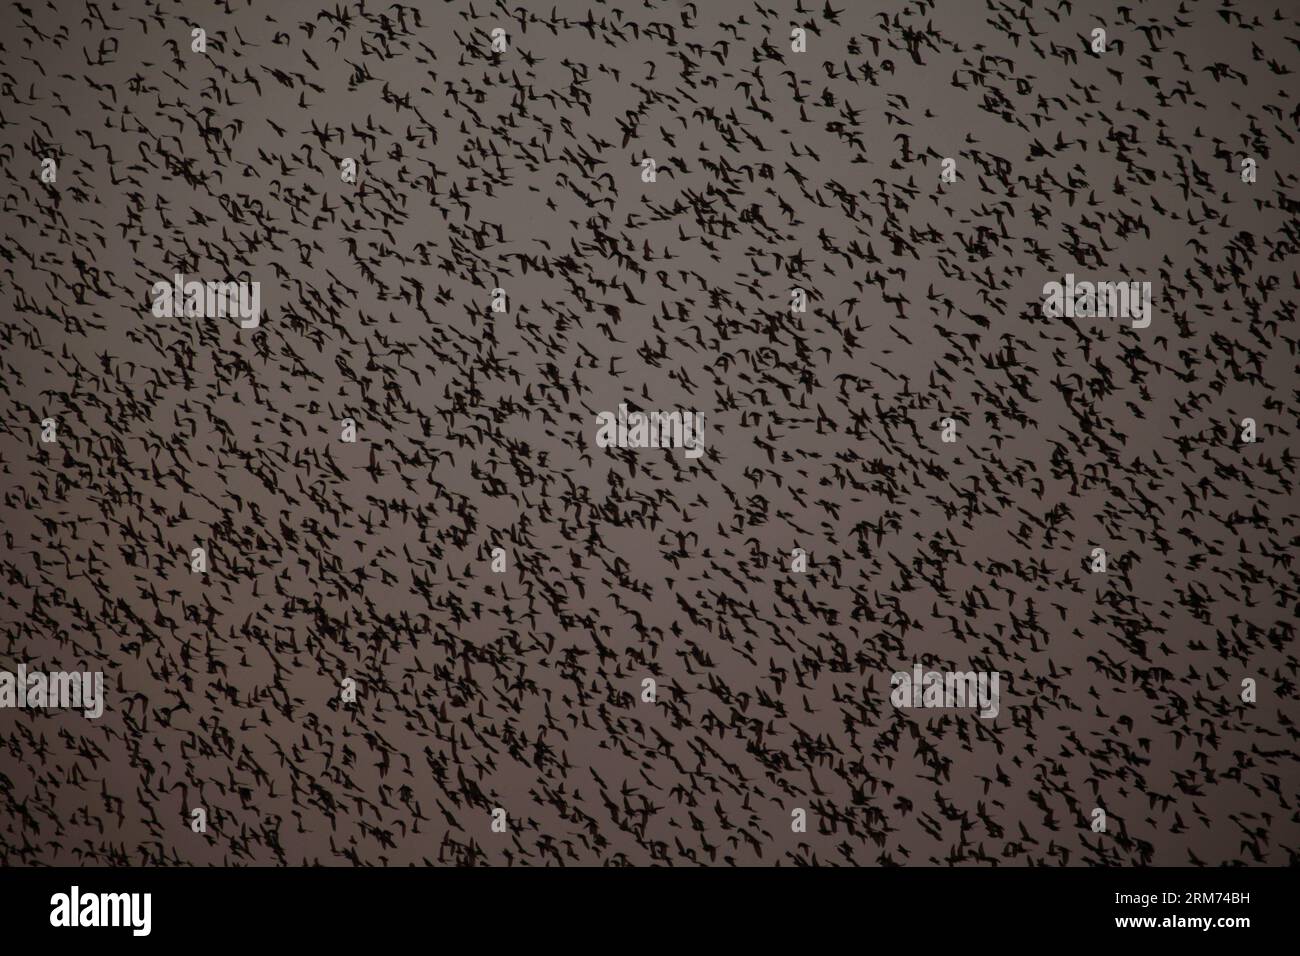 OFAKIM (ISRAEL), 11. Februar 2014 -- Ein Murmeln von Sternenfliegen in der Nähe von Ofakim im Süden Israels, am 11. Februar 2014. Im Januar und Februar versammelten sich hier hunderttausende von Sternenarten in riesigen Wolken über Feldern und Wäldern, wogend, drehend und schlängelnd. (Xinhua/Gil Cohen Magen) ISRAEL-OFAKIM-STARLINGS PUBLICATIONxNOTxINxCHN Ofakim Israel Feb 11 2014 eine Gecko-Spezies Murmurmuration von Fly in der Nähe von Ofakim Süd-Israel AM Februar 11 2014 im Januar und Februar Hunderttausende von versammelten sich in riesigen Wolken über Feldern und Wäldern hier Wheeling Wenden und Wiegen in UN Stockfoto